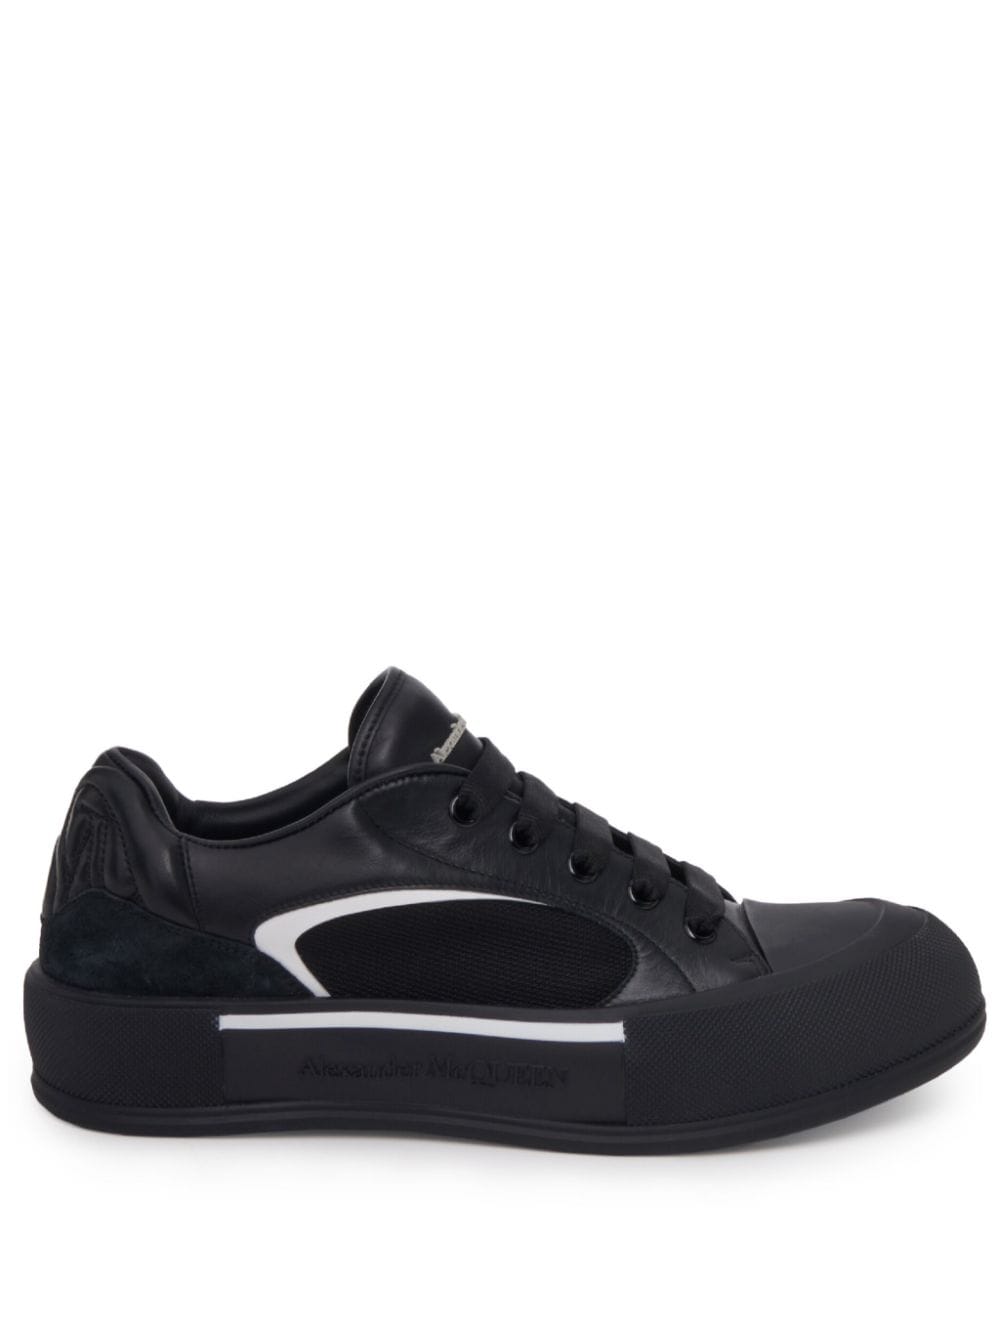 Shop Alexander Mcqueen Skate Deck Plimsoll Sneakers In Black